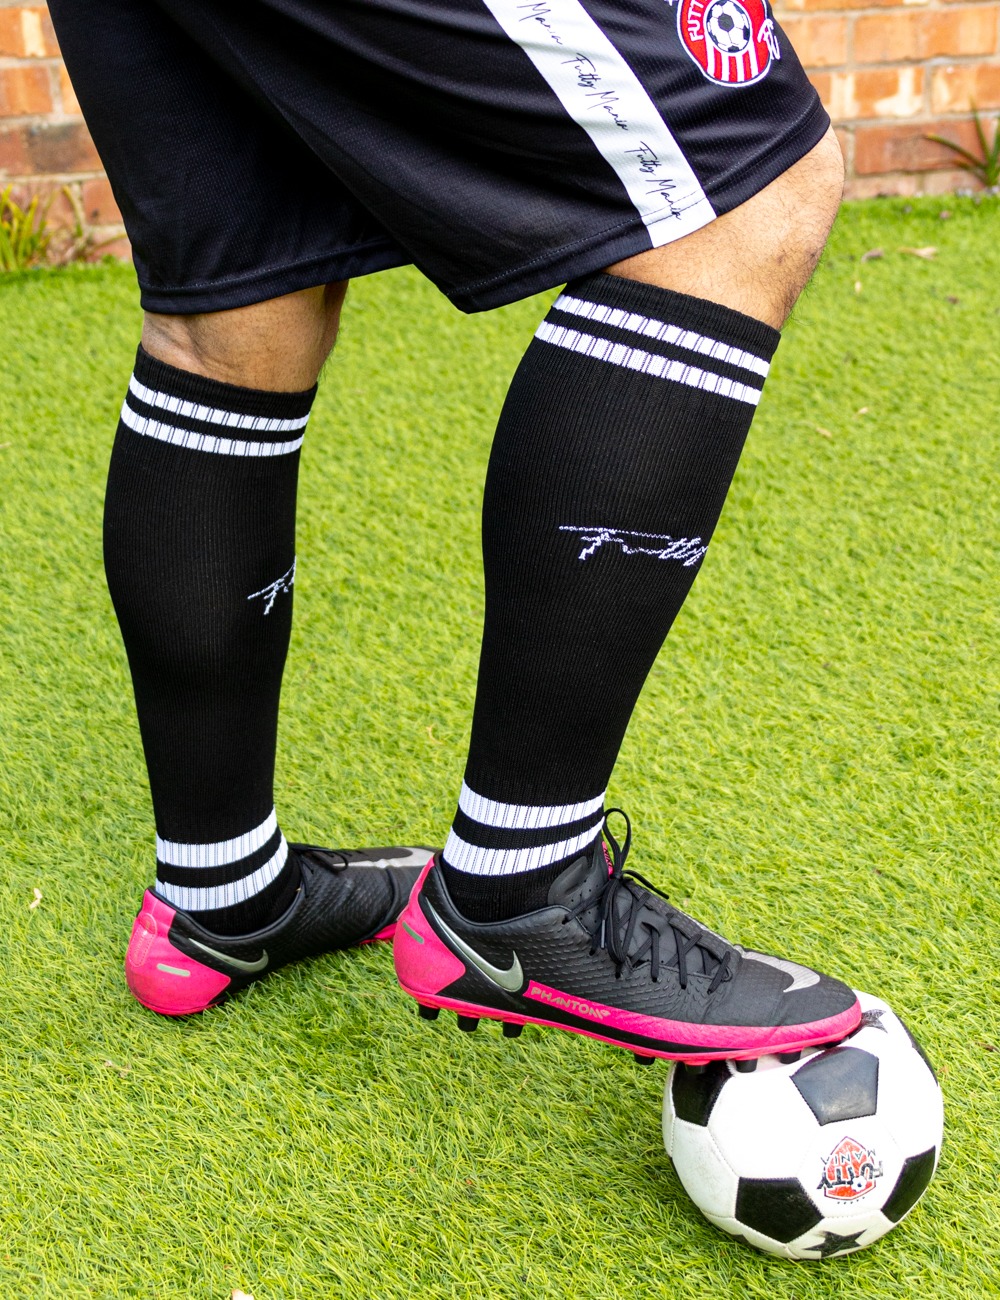 FM53 – Football Gripper Socks Boots Pic